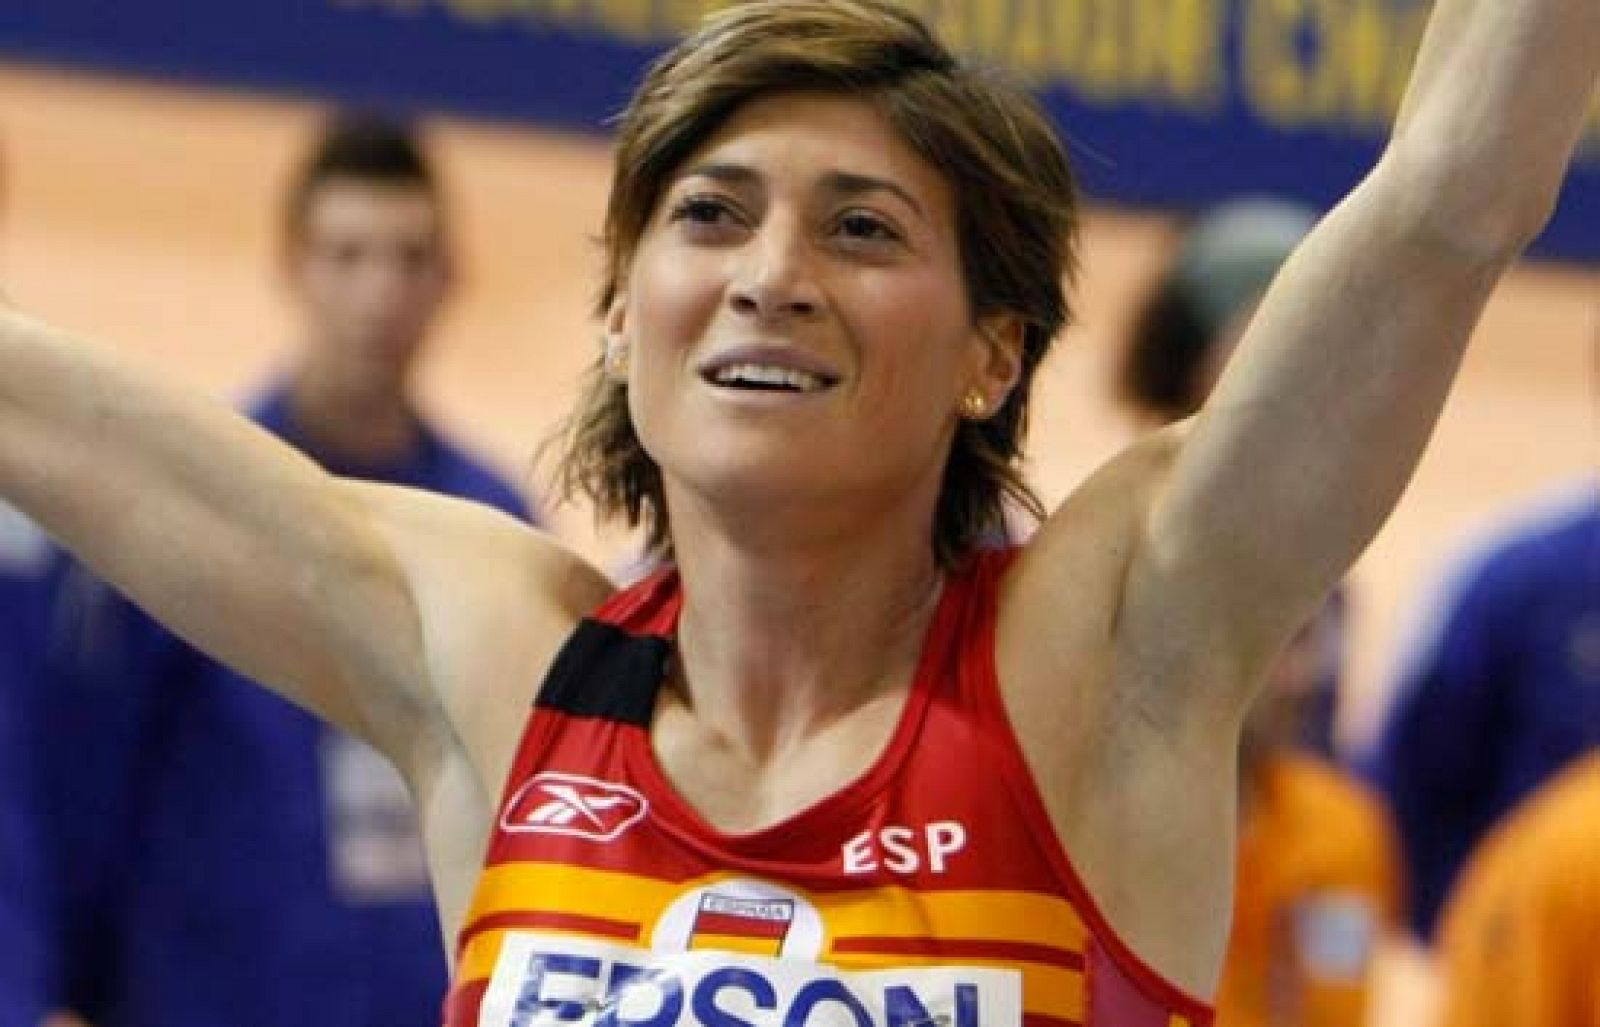 La española Mayte Martínez termina tercera su serie de 800 metros y se clasifica para las semifinales del Mundial de Atletismo 